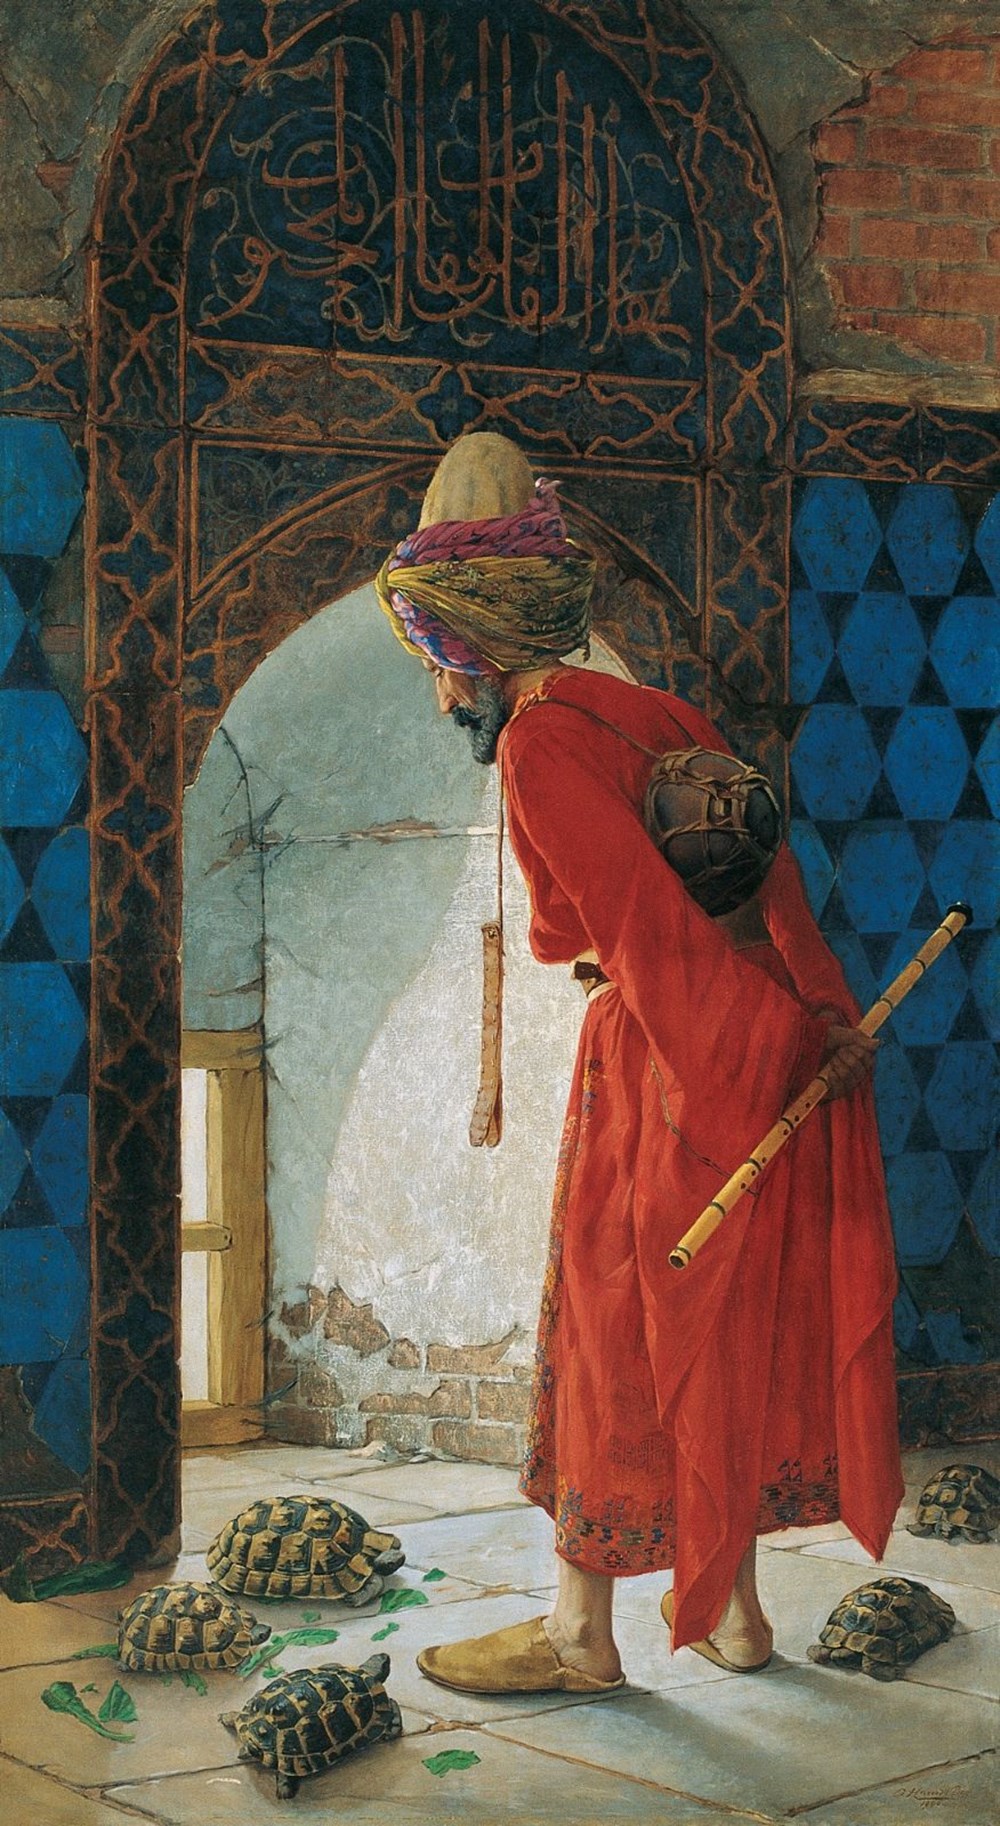 3 haftada 3 tablosu rekor fiyata satılan Osman Hamdi Bey hakkında bilmeniz gerekenler - 9